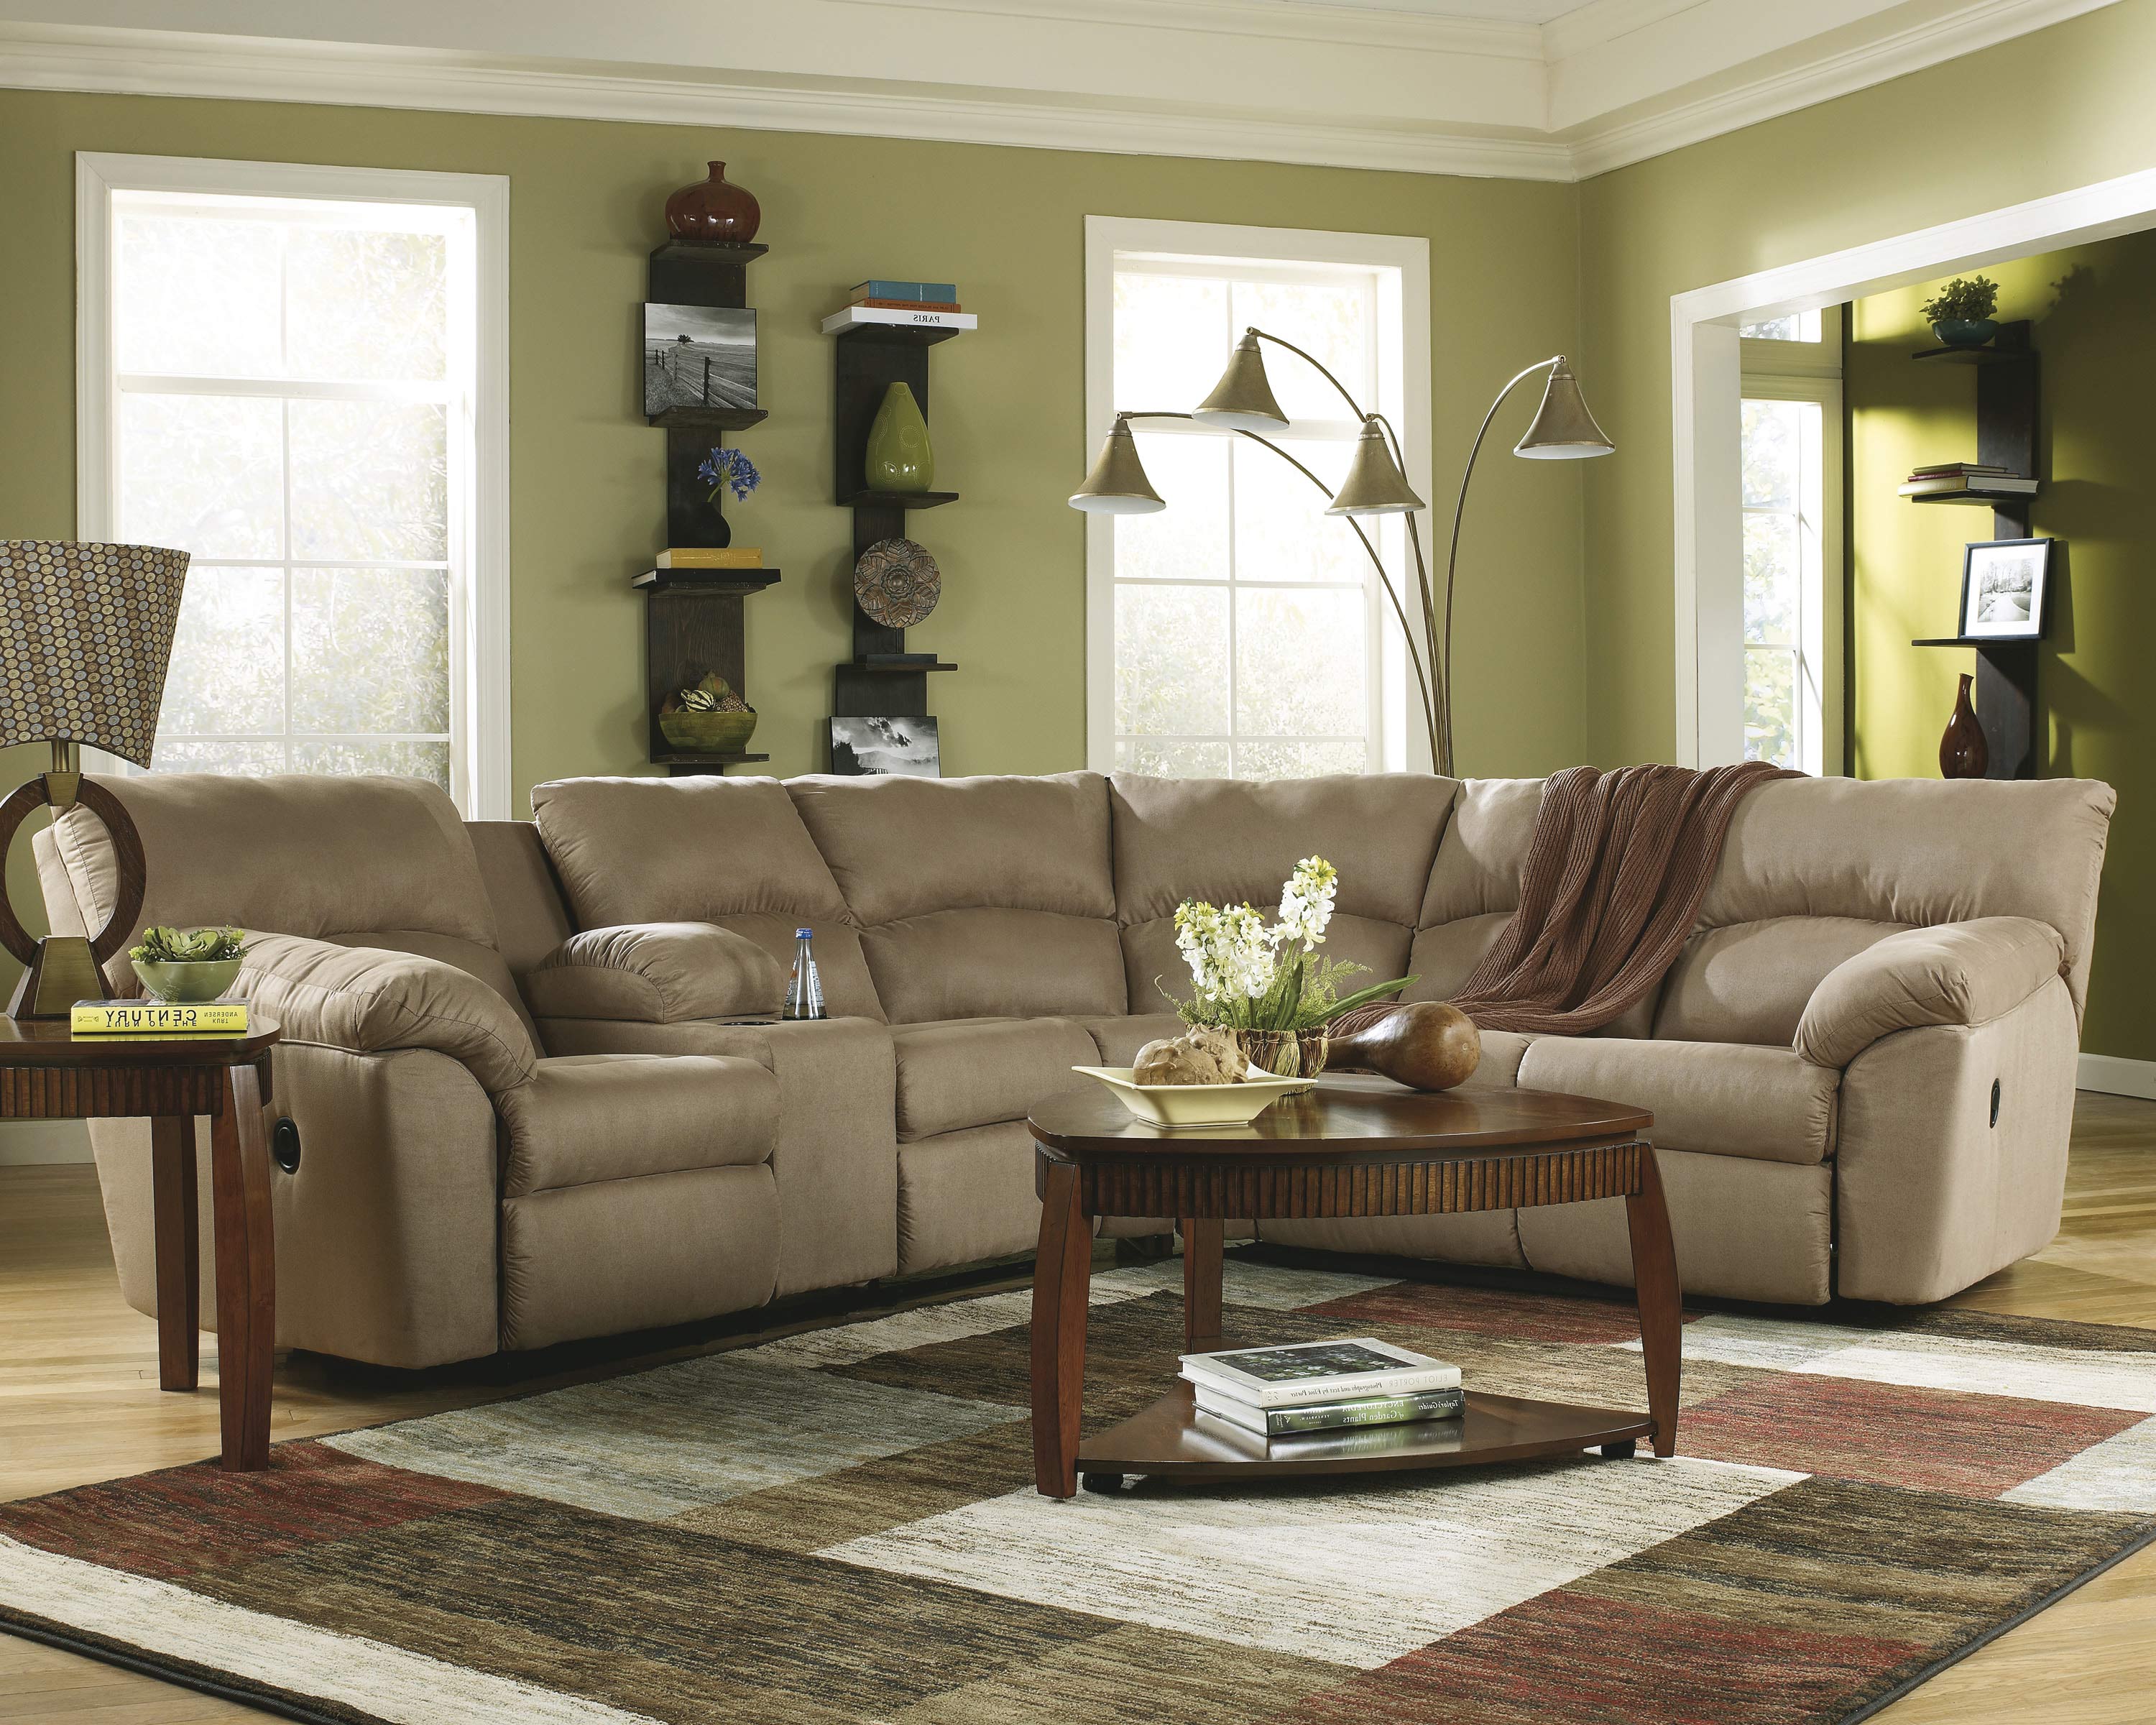 Living Room Furniture Design » Arthatravel.com